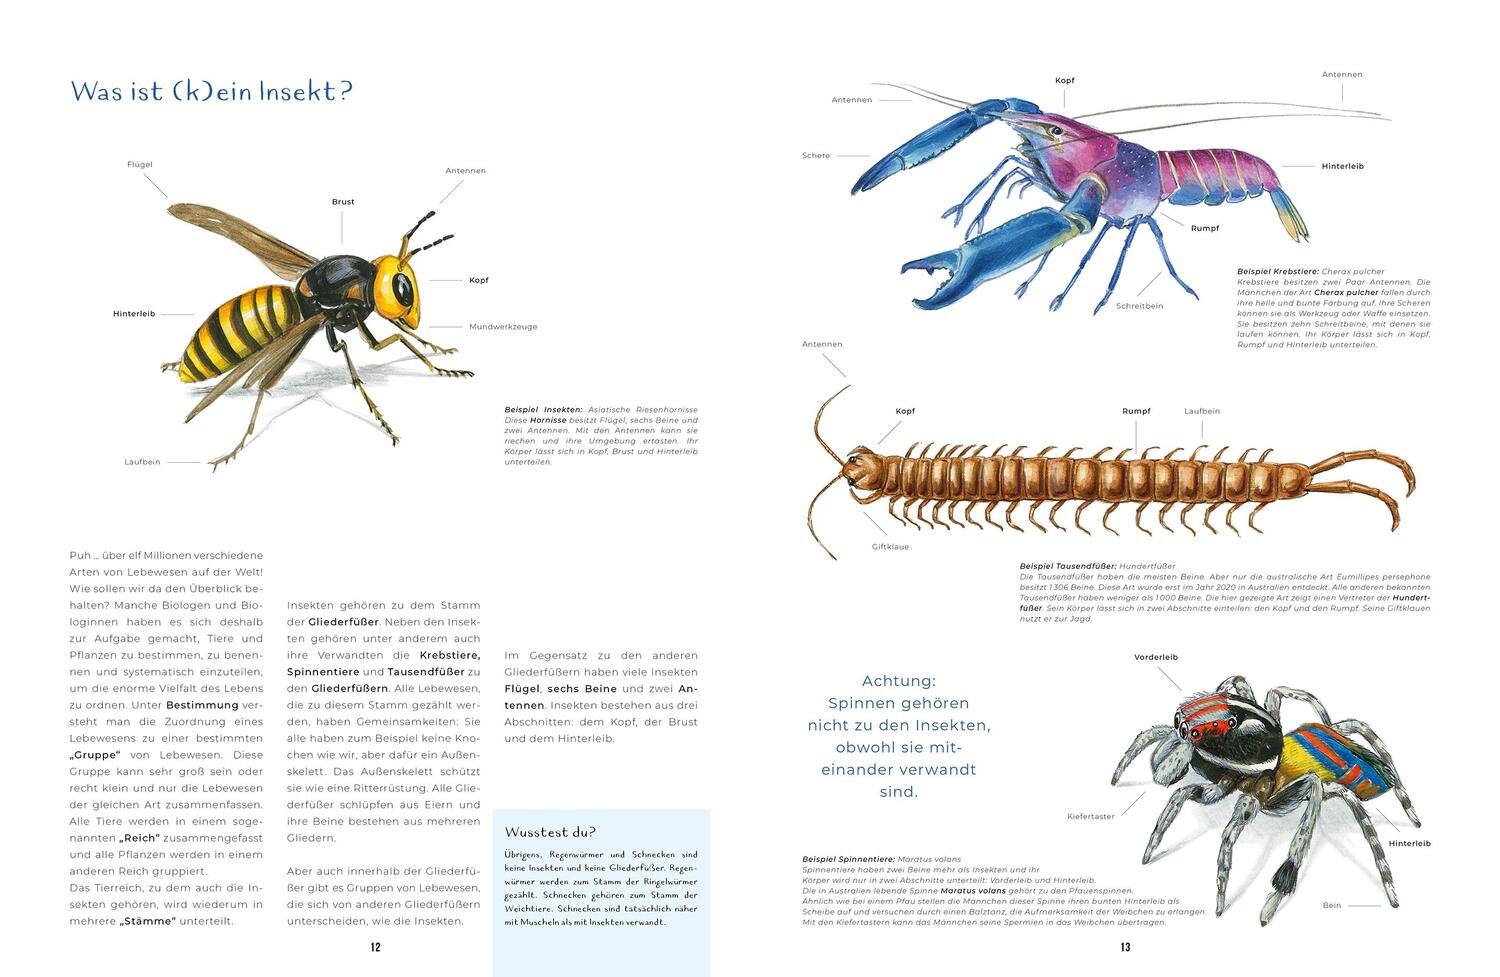 Bild: 9783734860348 | Insekten - Kleine Lebewesen, große Vielfalt | Tim-Henning Humberg